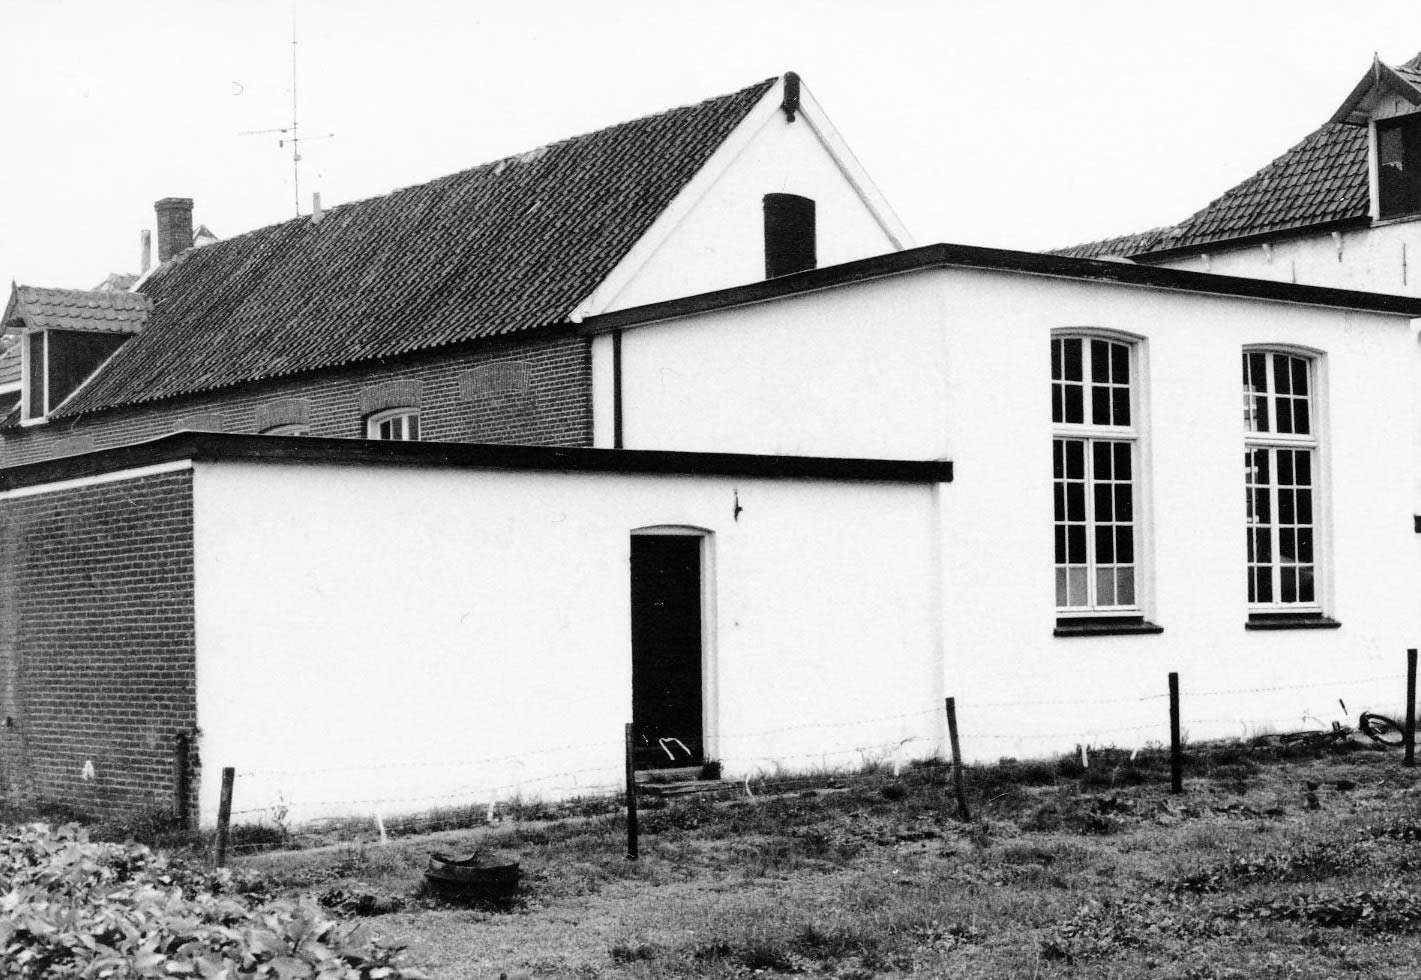 De bewaarschool van de zusters was gevestigd in het lokaal met het platte dak (foto: Ton Cruijsen, 1978. Bron: BHIC, Beeldcollectie Ton Cruijsen nr. 1903-000140)